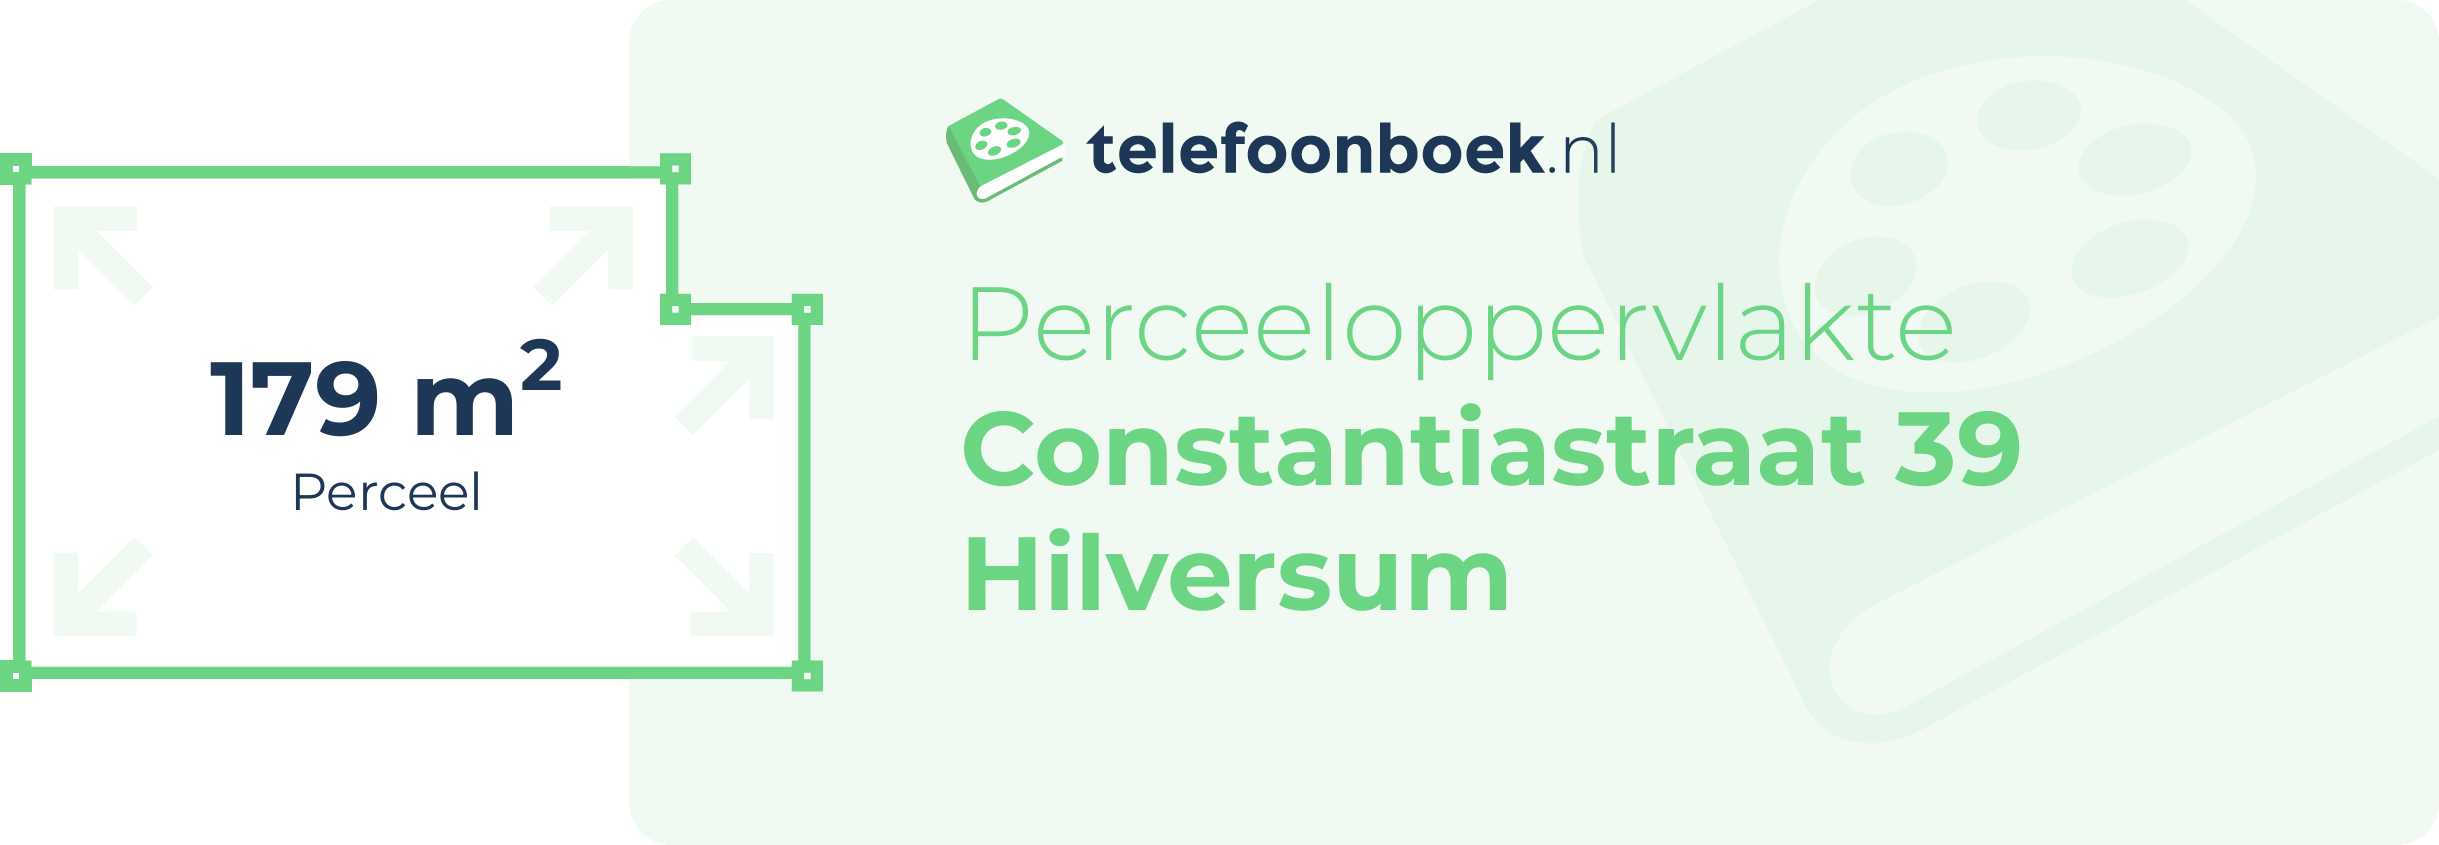 Perceeloppervlakte Constantiastraat 39 Hilversum